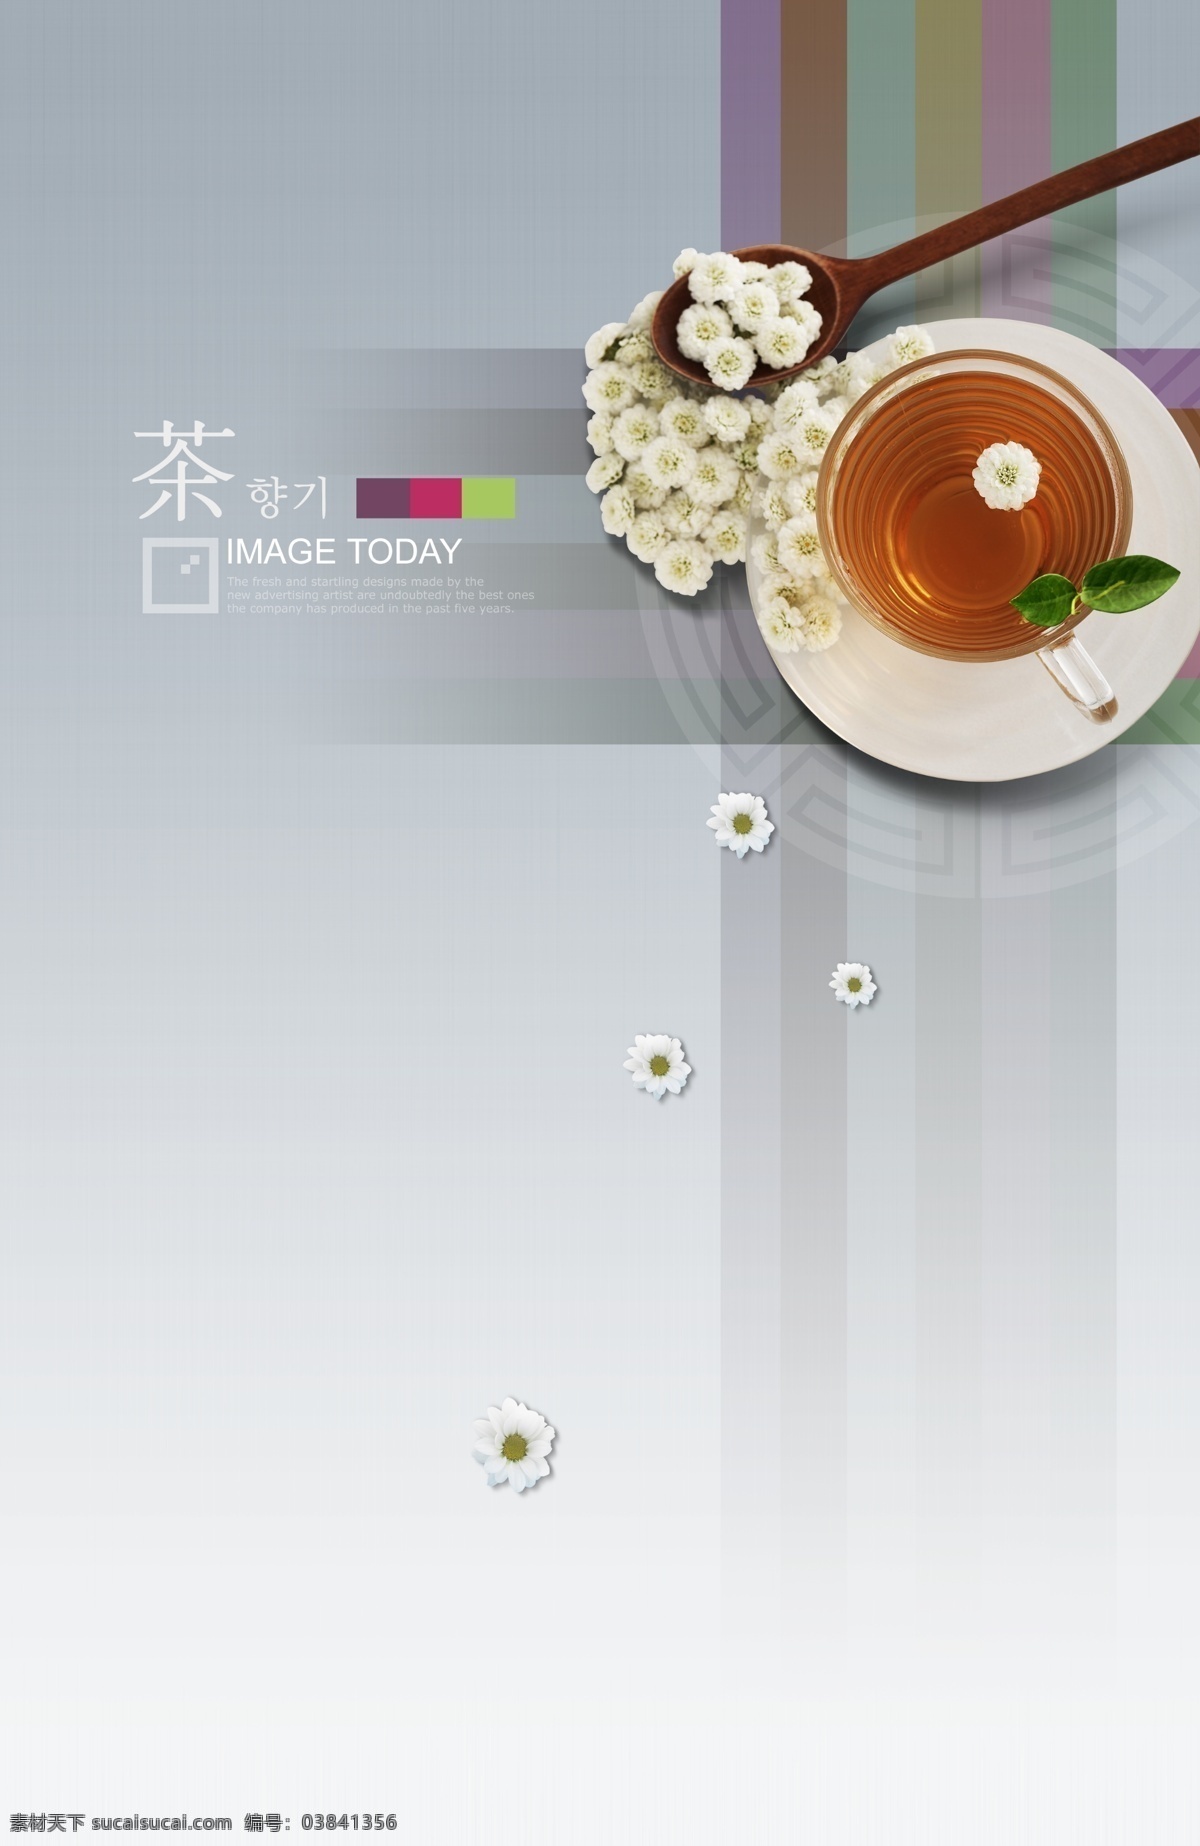 韩国 茶文化 主题 分层 韩国素材 鲜花 花朵 花卉 勺子 木勺 纹样 团纹 纹理 图案 蜂蜜茶 条纹 优雅 背景 横纹 竖纹 树叶 叶子 碟子 白色